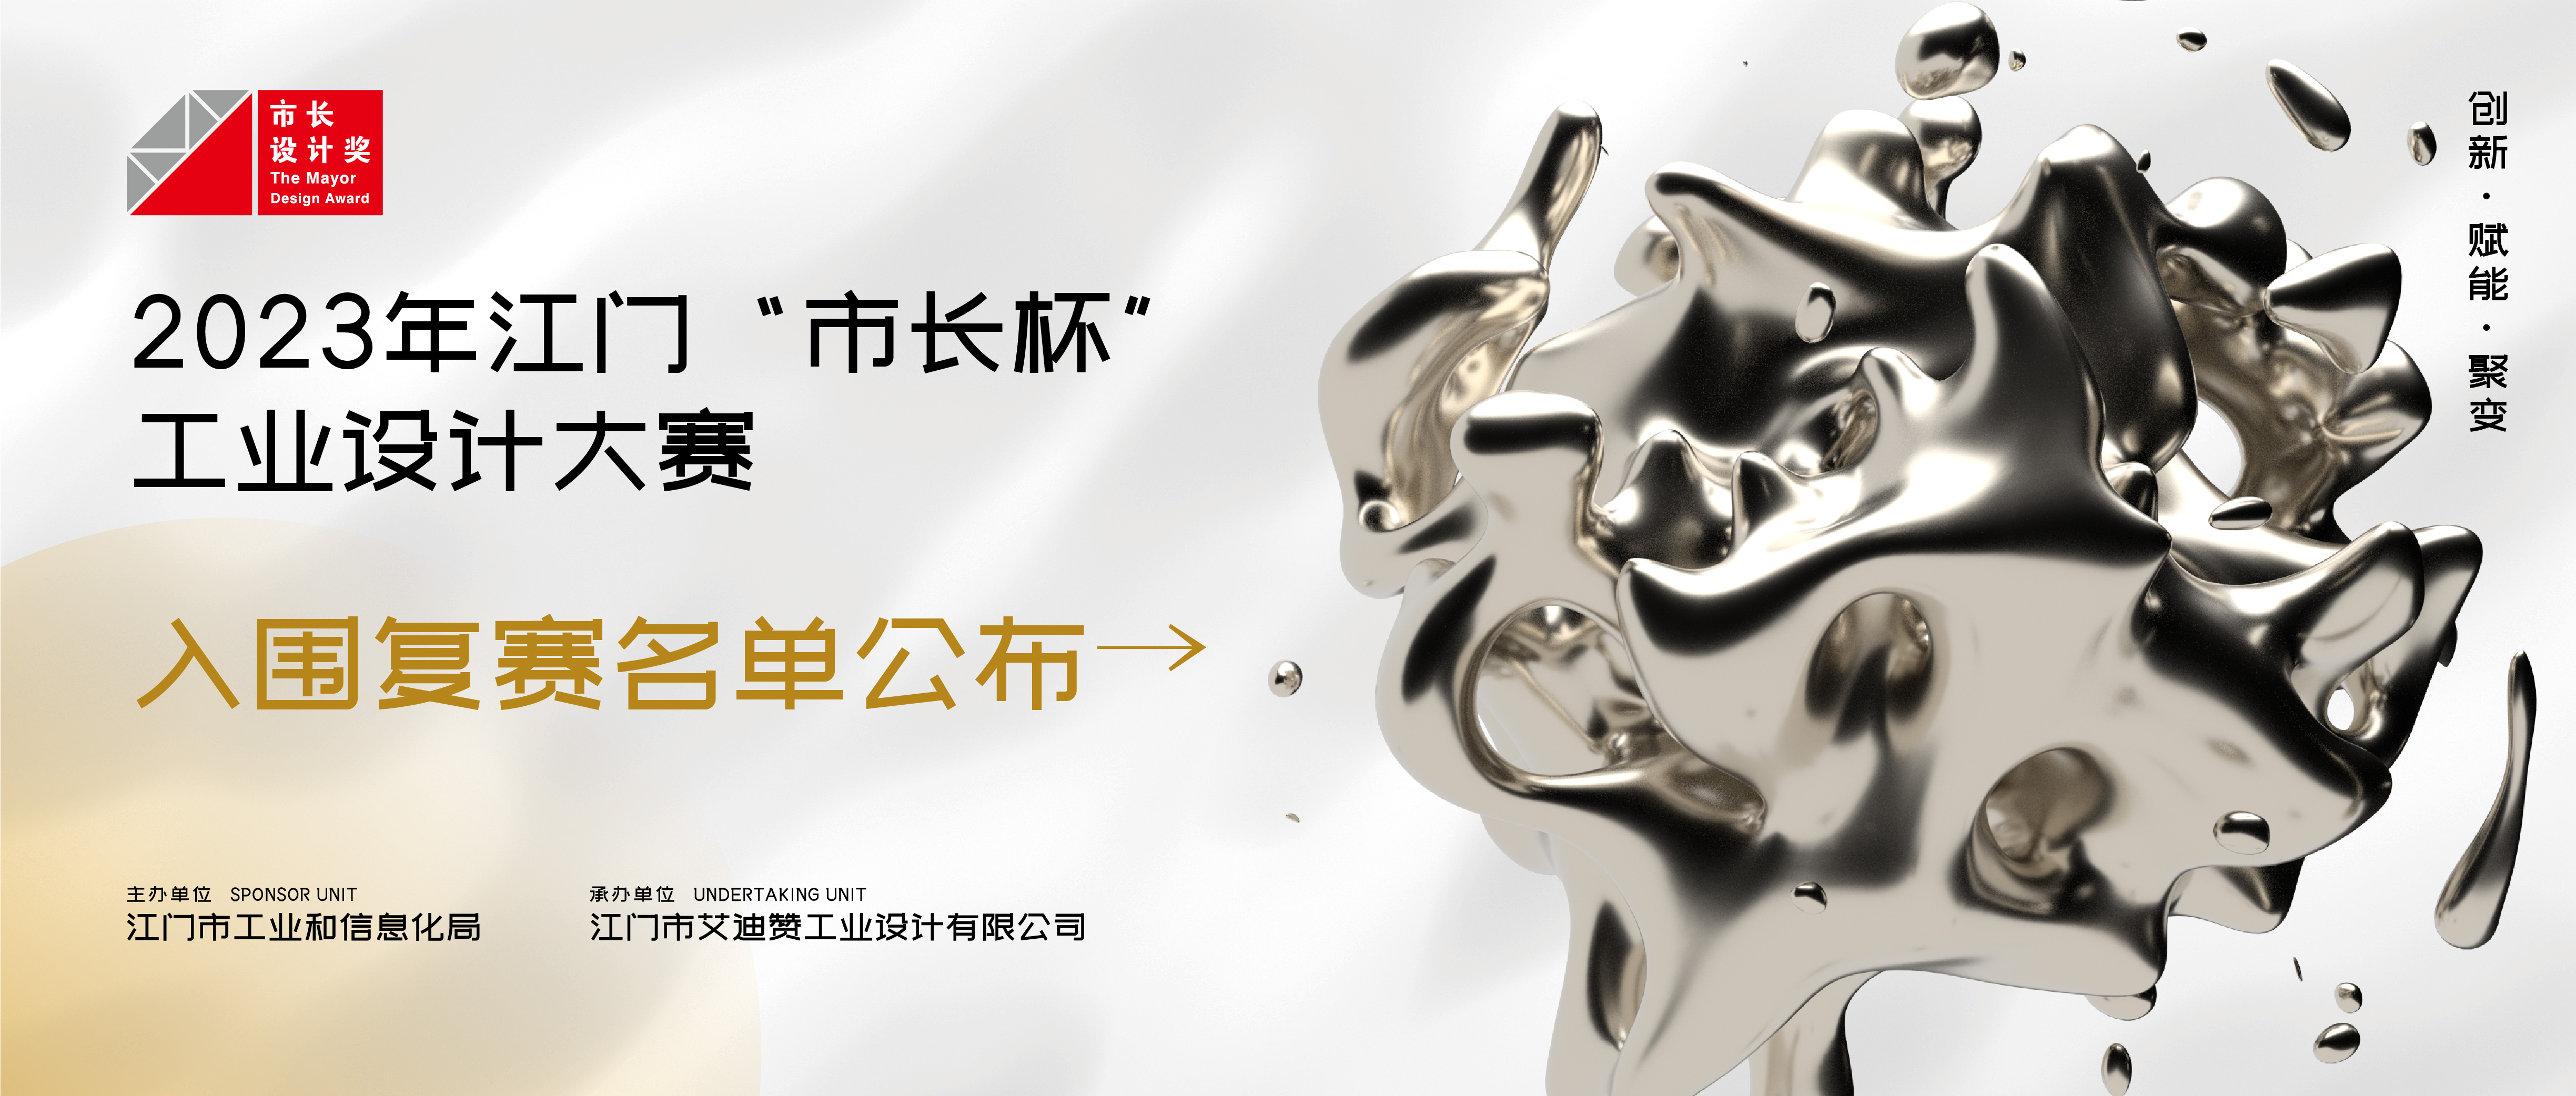 2023年江门“市长杯”工业设计大赛晋级复赛作品名单公布